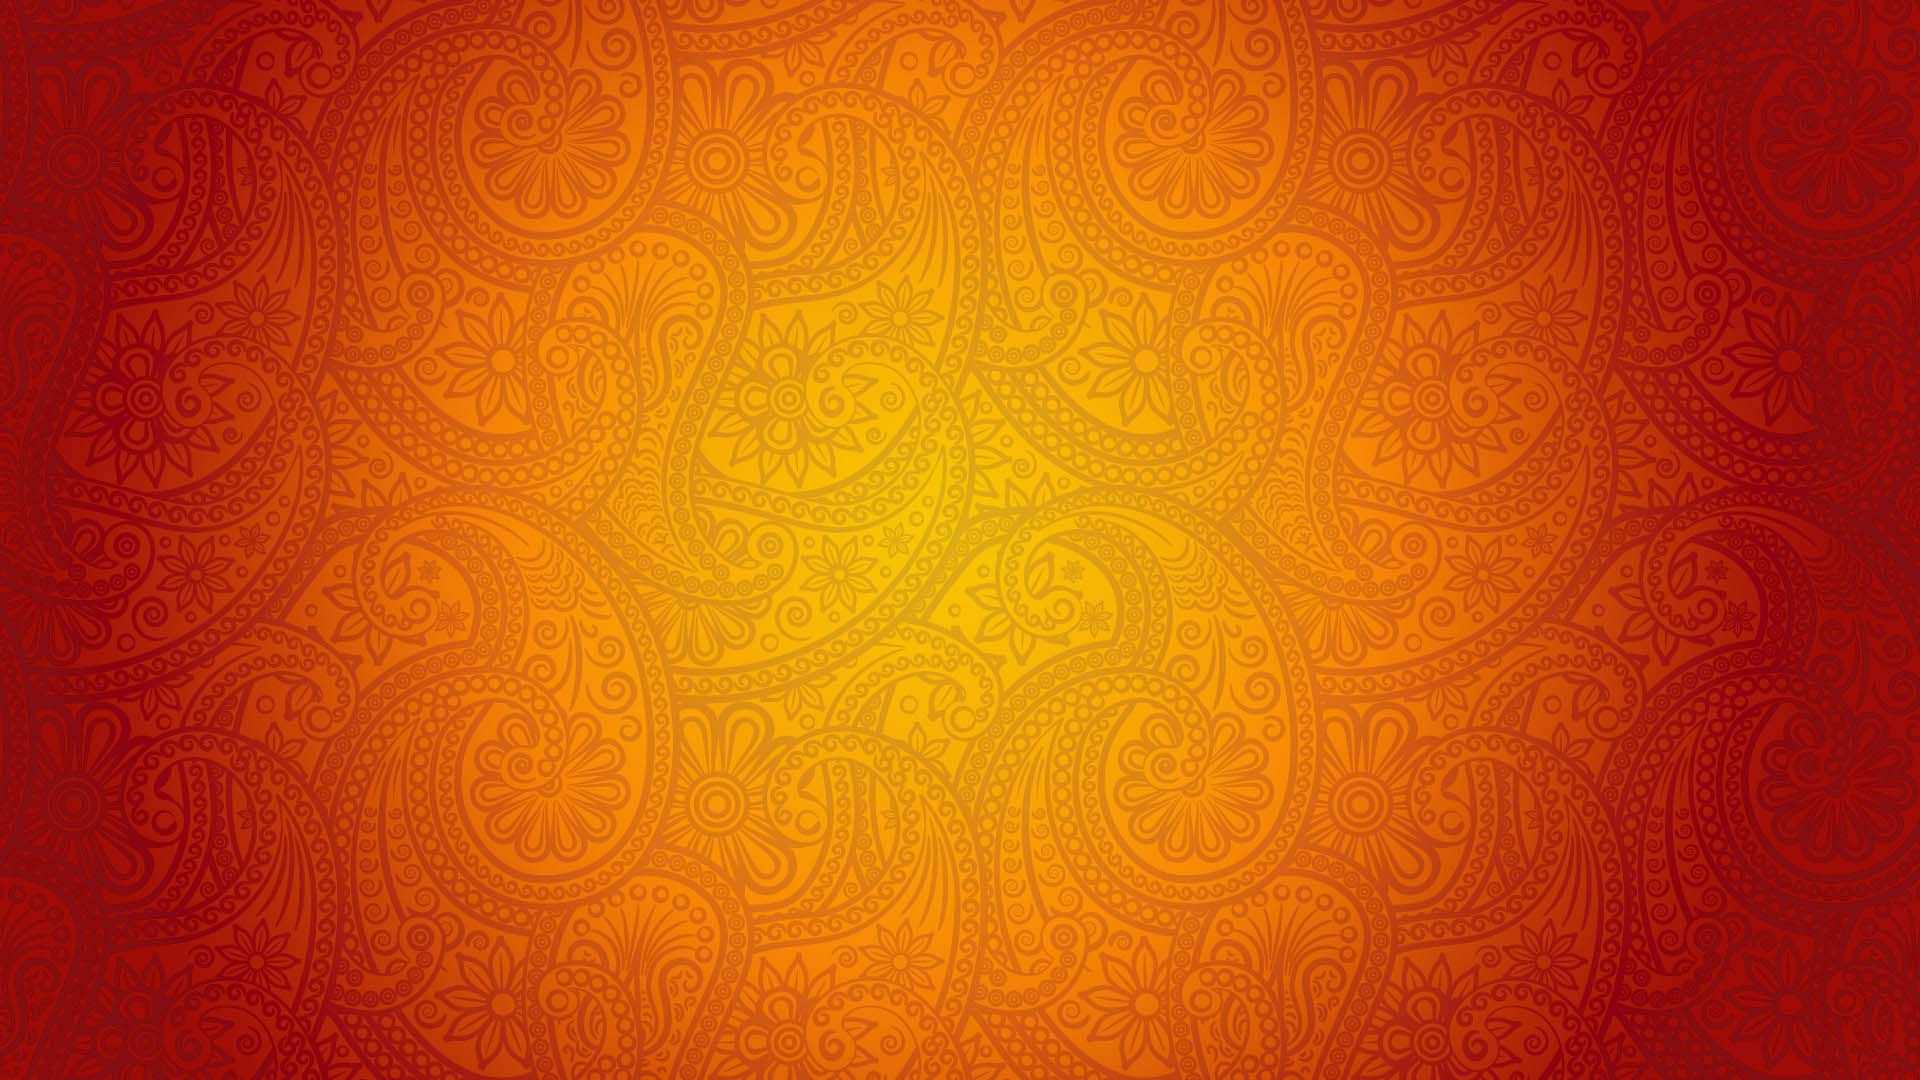 Đừng bỏ qua cơ hội sở hữu những hình nền màu cam tuyệt đẹp trong bộ sưu tập của chúng tôi! Với sự kết hợp tài tình giữa gam màu cam tươi sáng và các đối tượng thiên nhiên hoặc vật dụng đơn giản nhưng đầy ấn tượng, chắc chắn bạn sẽ không thể rời mắt khỏi những tác phẩm này. Hãy nhanh tay truy cập để tìm hiểu thêm về hình nền màu cam và nhiều thông tin hữu ích khác nhé!